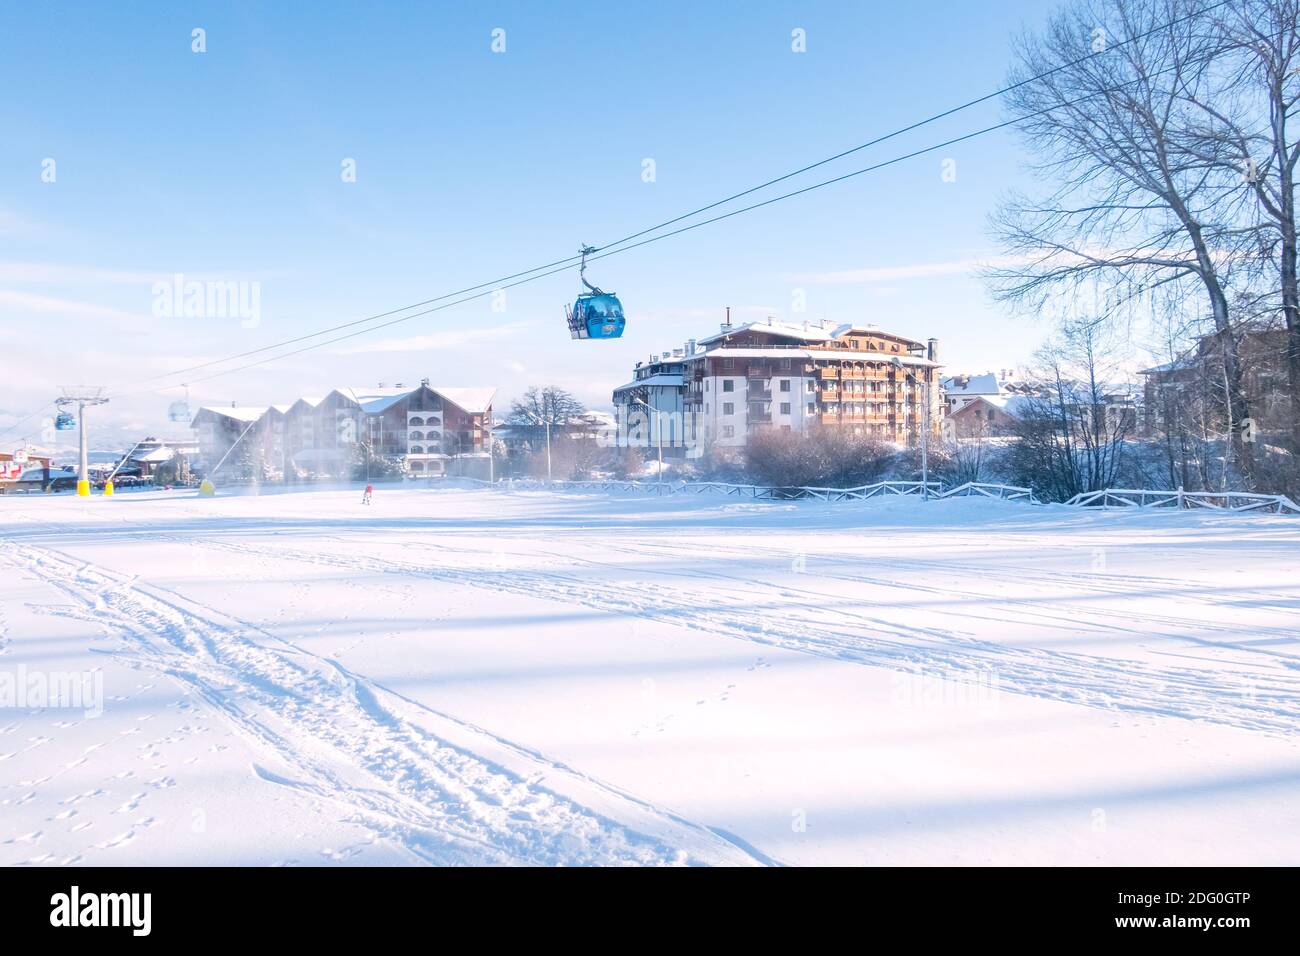 Bansko, Bulgarien - 22. Januar 2018: Winter im bulgarischen Skigebiet mit Skipiste, Gondelbahnen, Skifahrer Stockfoto